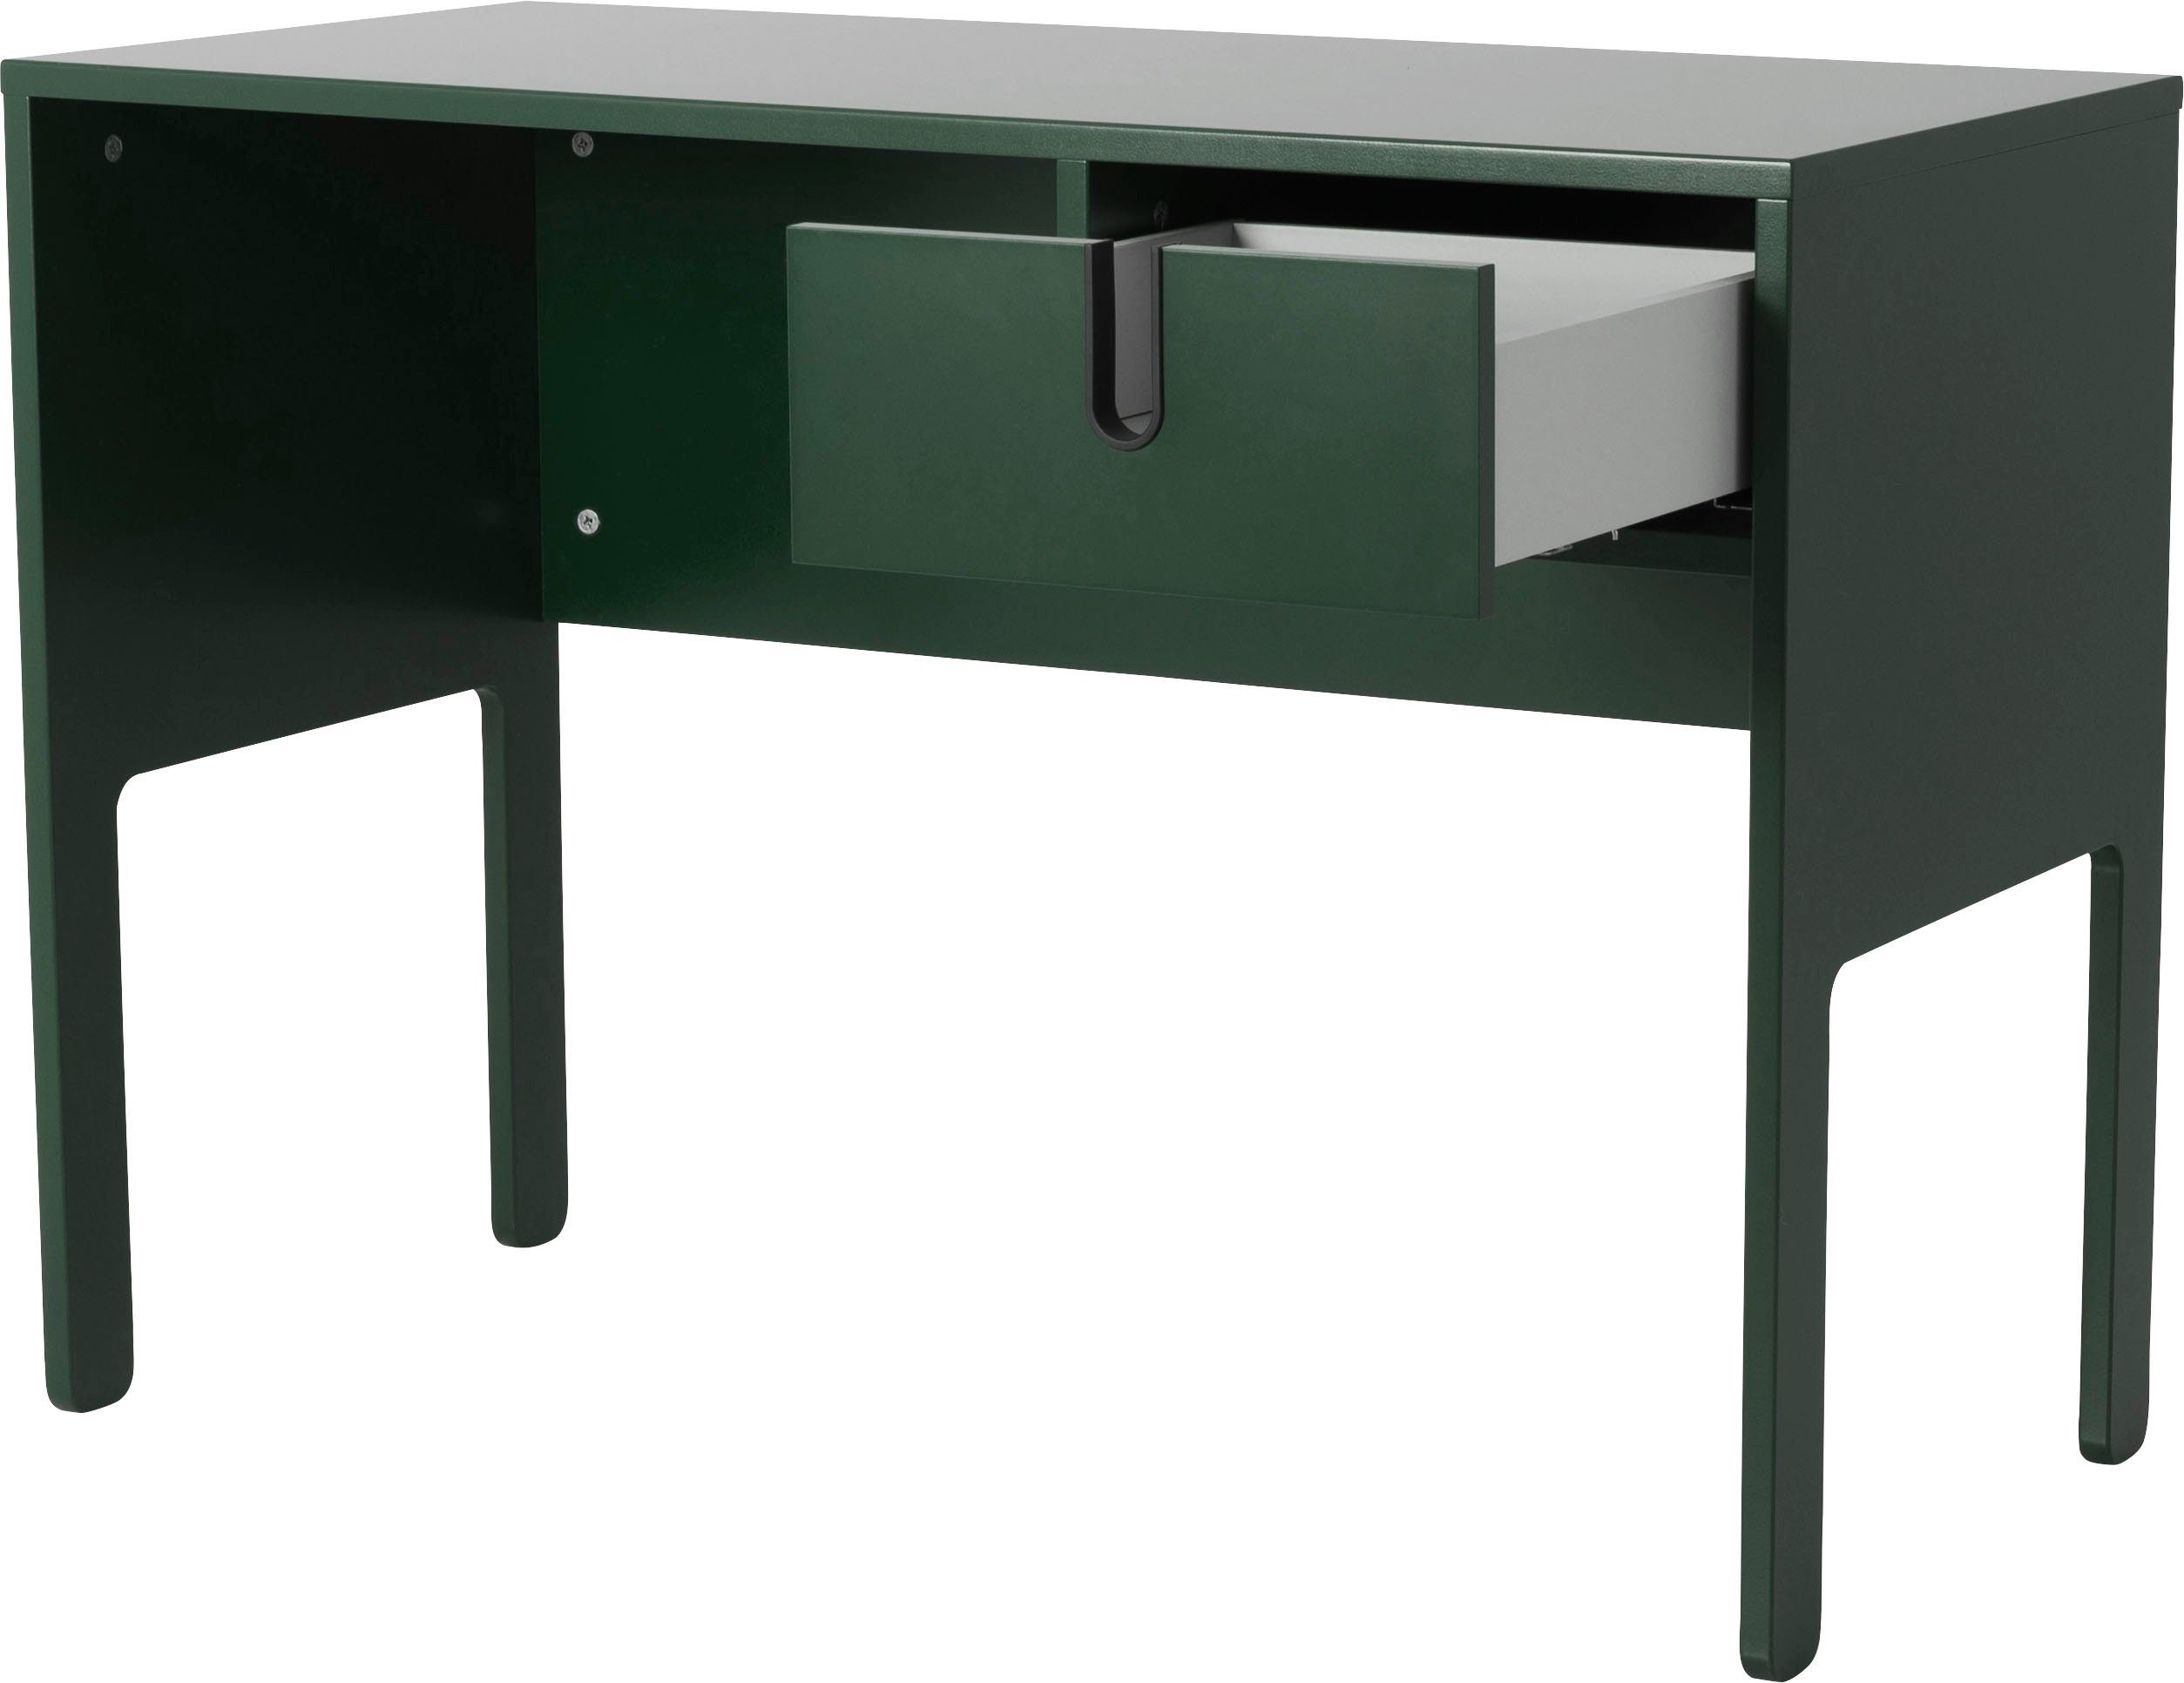 Tenzo Schreibtisch UNO, mit green von By Toulouse 1 forest Olivier Tenzo Schublade, Design